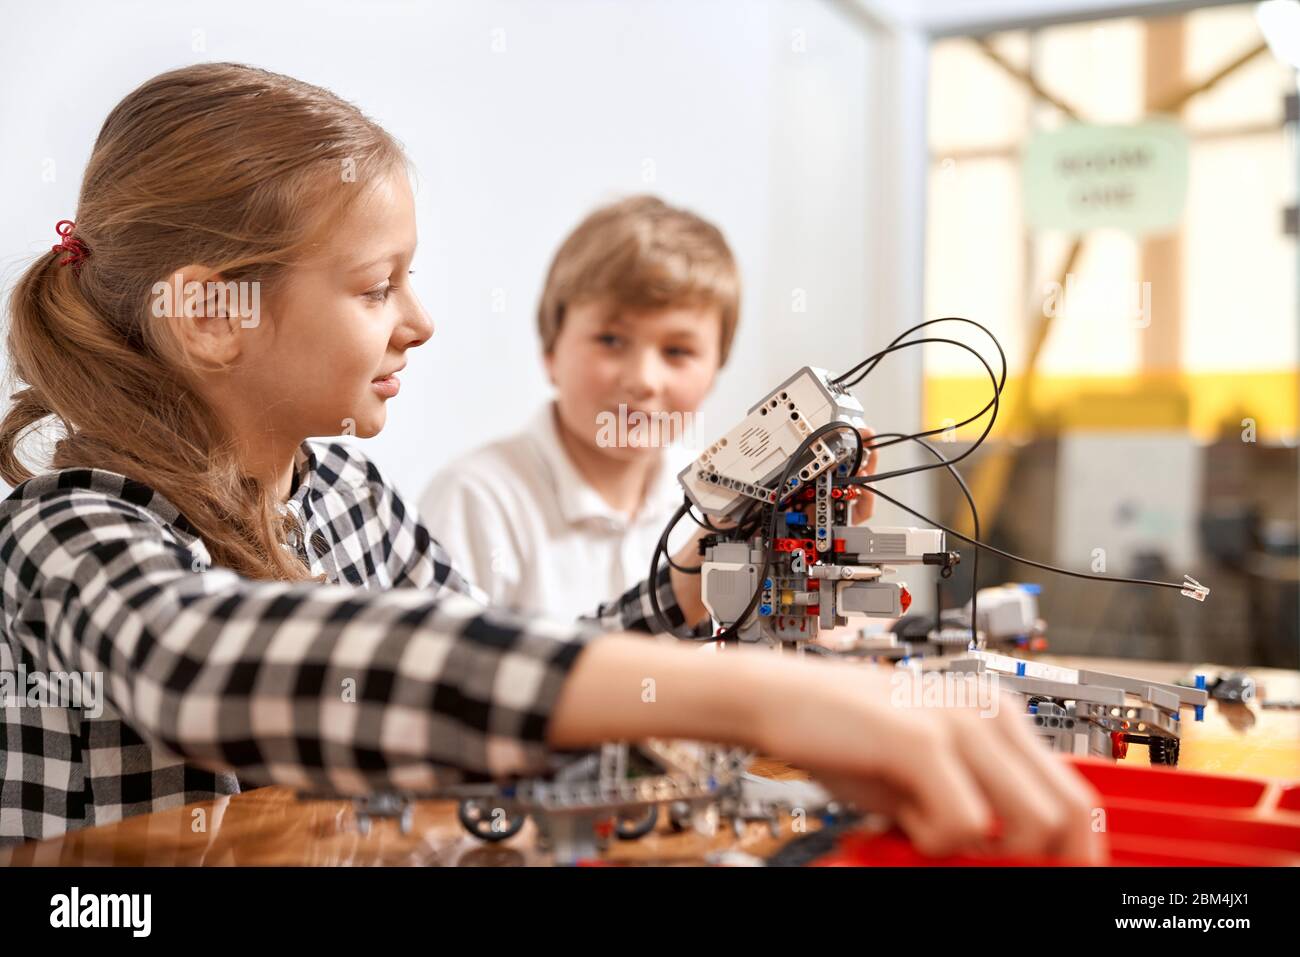 Vista laterale di ragazzo che aiuta la ragazza nella creazione di robot utilizzando kit di costruzione per bambini sul tavolo. Ingegneria scientifica. Amici interessati sorridenti, chiacchierati e lavorando insieme al progetto. Foto Stock